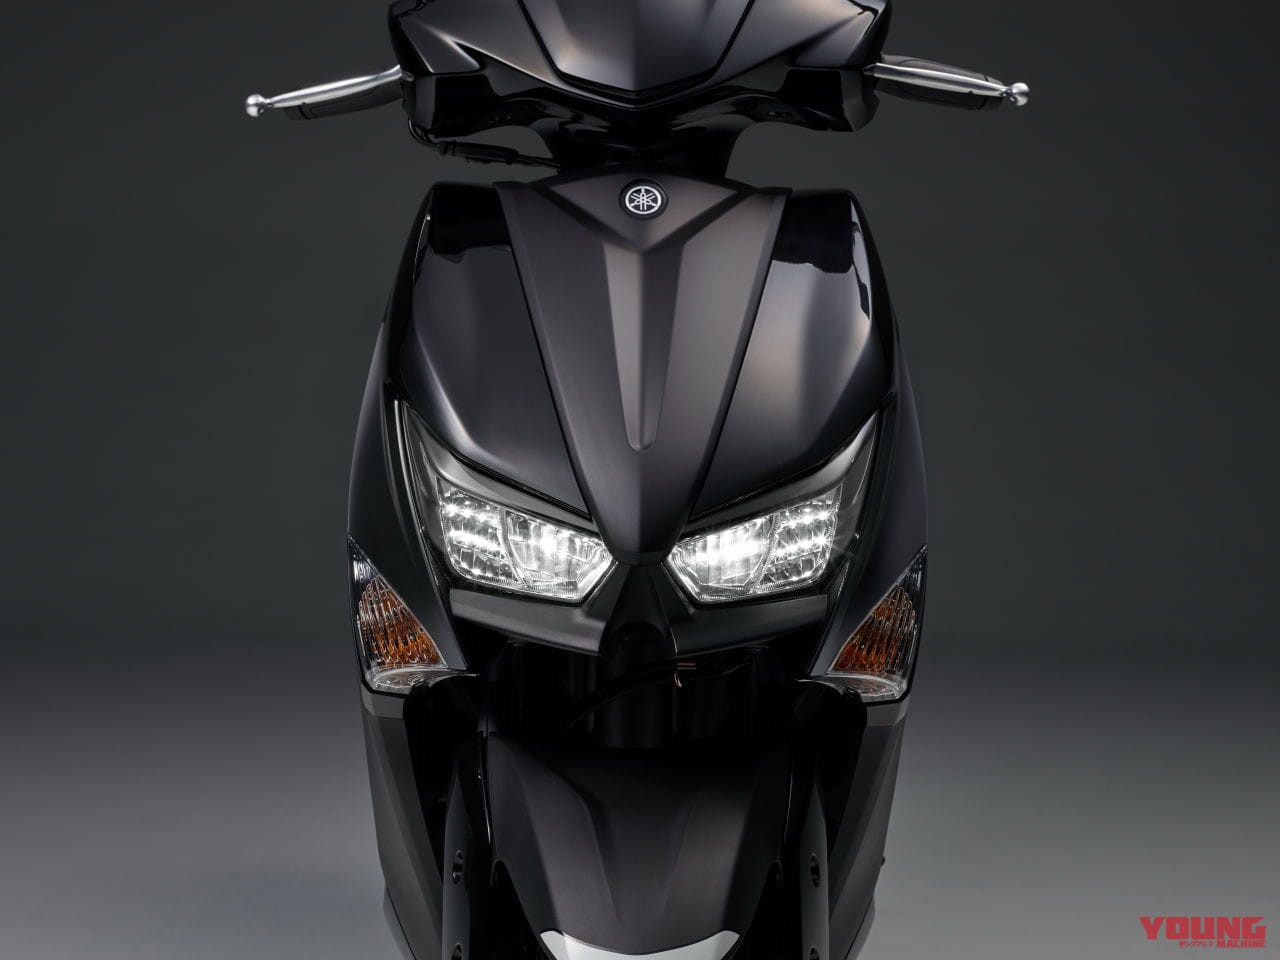 Yamaha khuấy động thị trường với mẫu xe tay ga Grande Hybrid hoàn toàn mới   Báo Dân trí